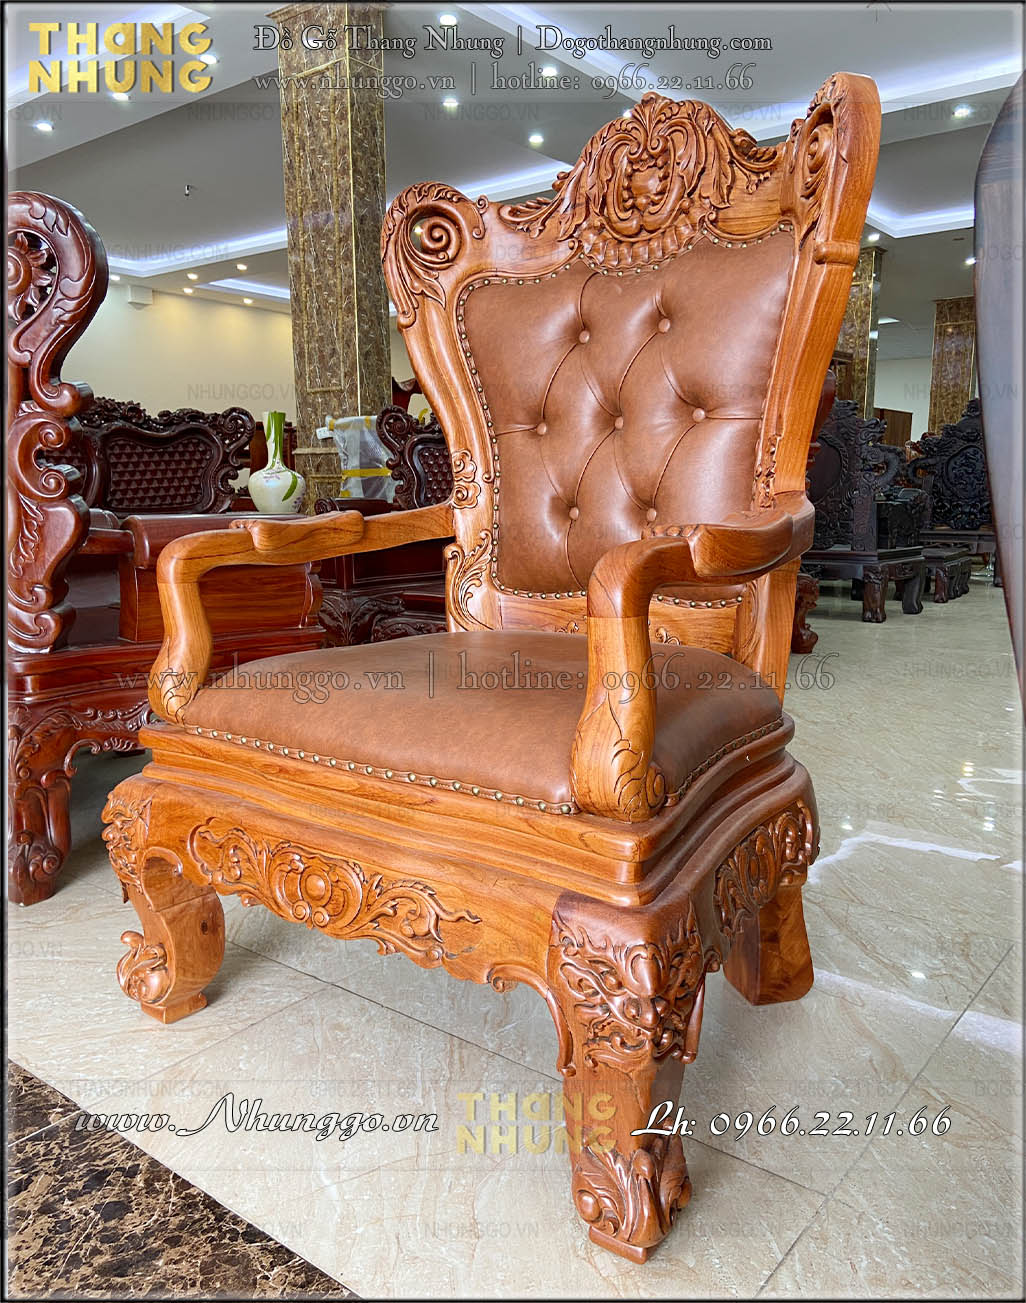 Ghế làm việc thủ tướng gỗ tự nhiên được thiết kế chân tĩnh 3D đục họa tiết trang trí tân cổ điển sắc nét bởi người thợ bậc cao của làng nghề gỗ Đồng Kỵ Bắc Ninh